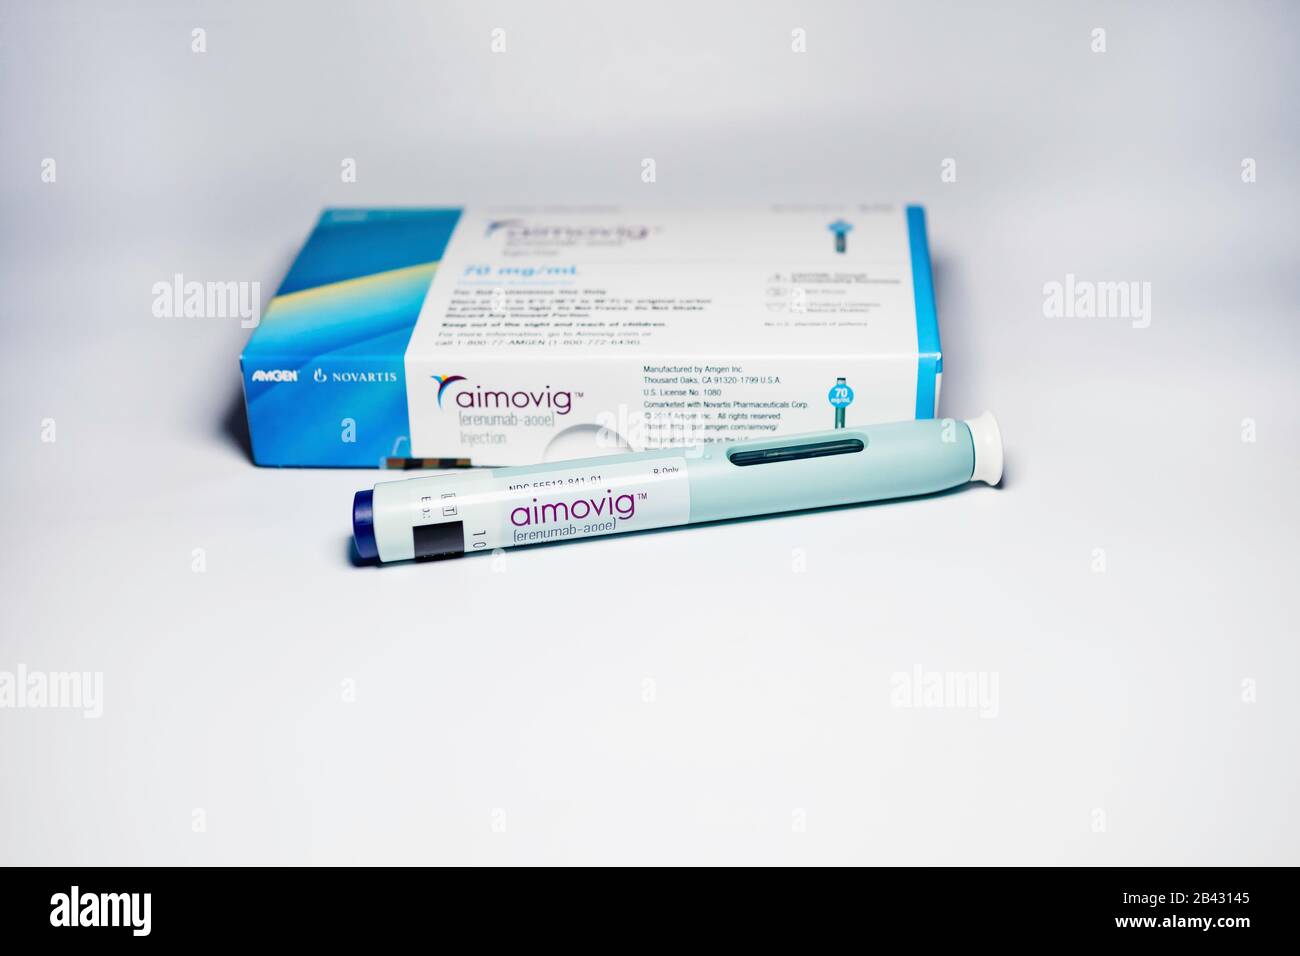 Aimovig (erenumab-aooe) 70 mg auto-injector device, prescription drug for migraine prevention, and box, studio, color, United States Stock Photo